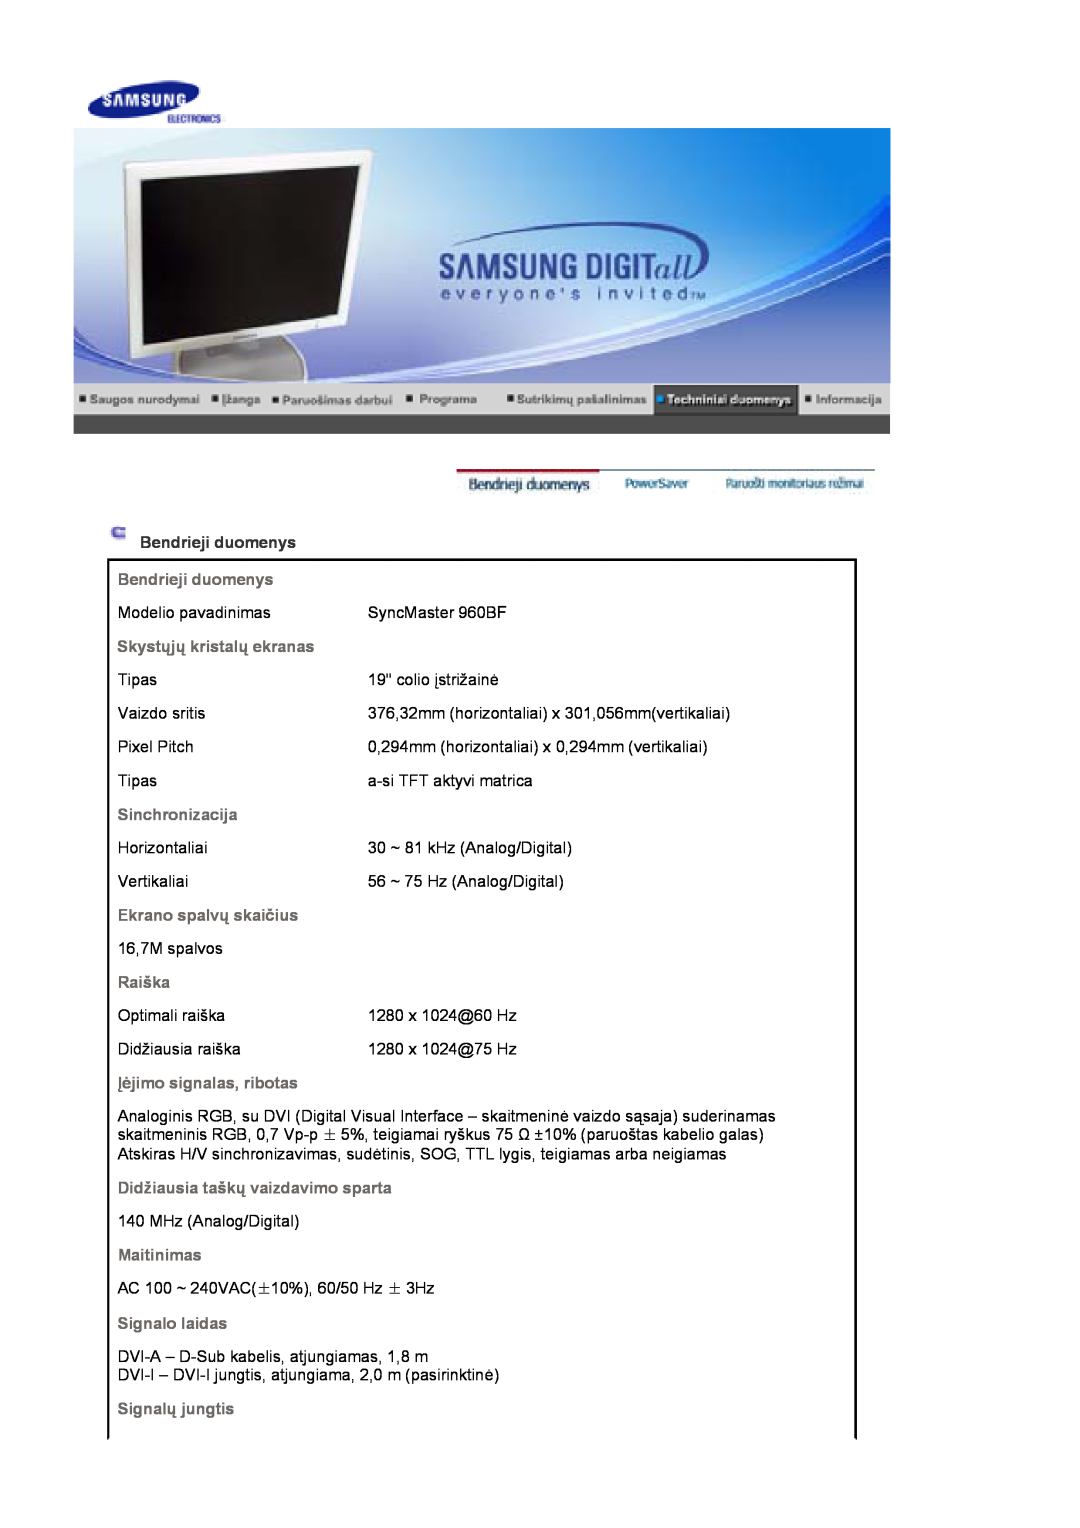 Samsung LS17HJDQHV/EDC, LS19HJDQFV/EDC, LS19HJDQHV/EDC Bendrieji duomenys, 376,32mm horizontaliai x 301,056mmvertikaliai 